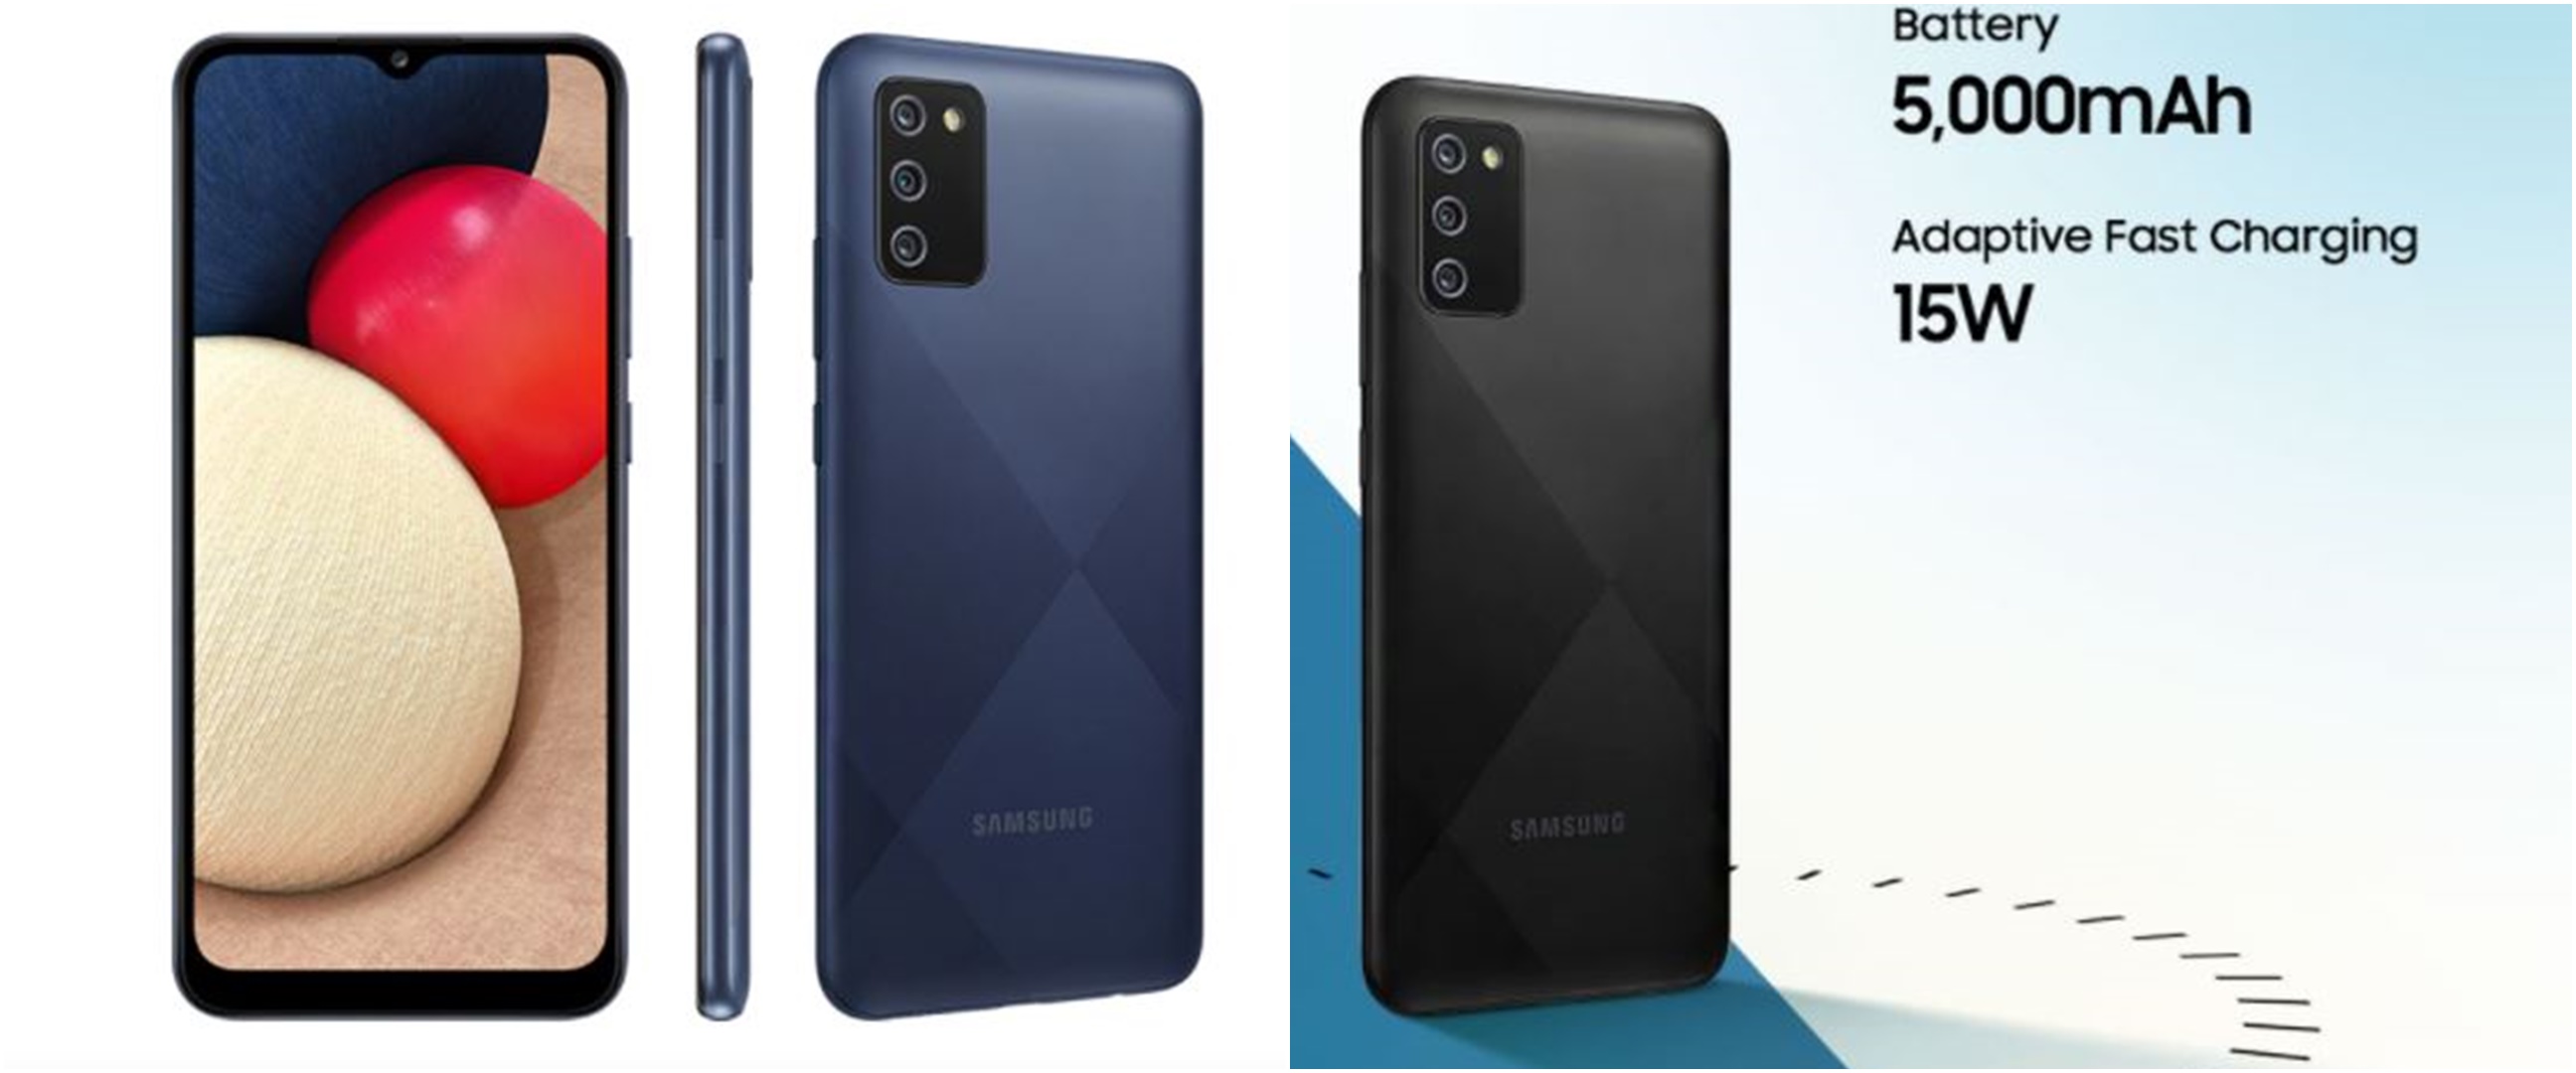 Harga Samsung A02s beserta spesifikasi, kelebihan dan kekurangannya